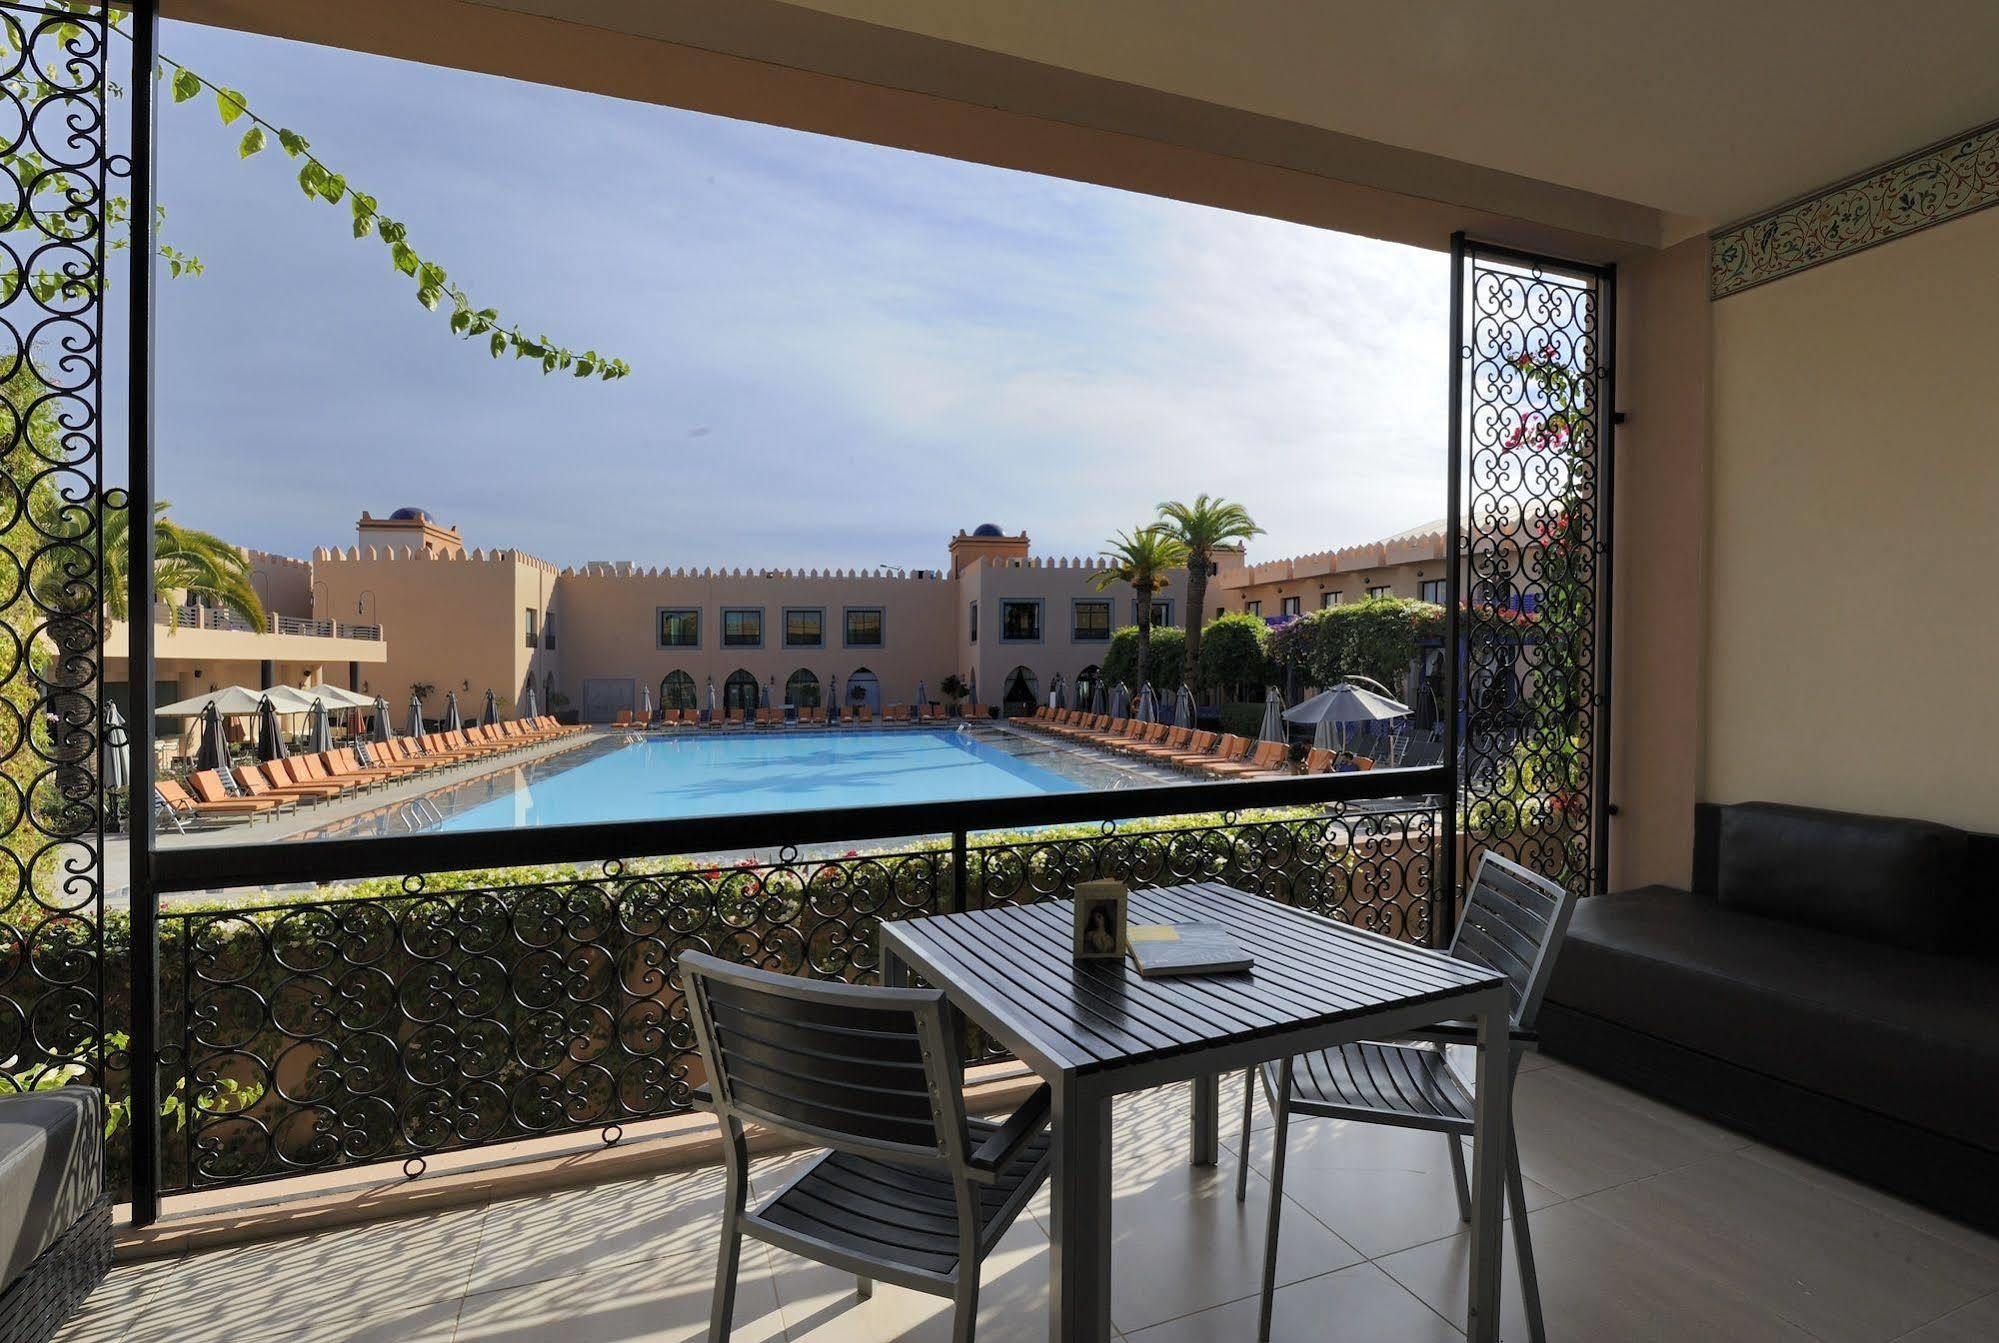 Adam Park Marrakech Hotel & Spa Марракеш Экстерьер фото